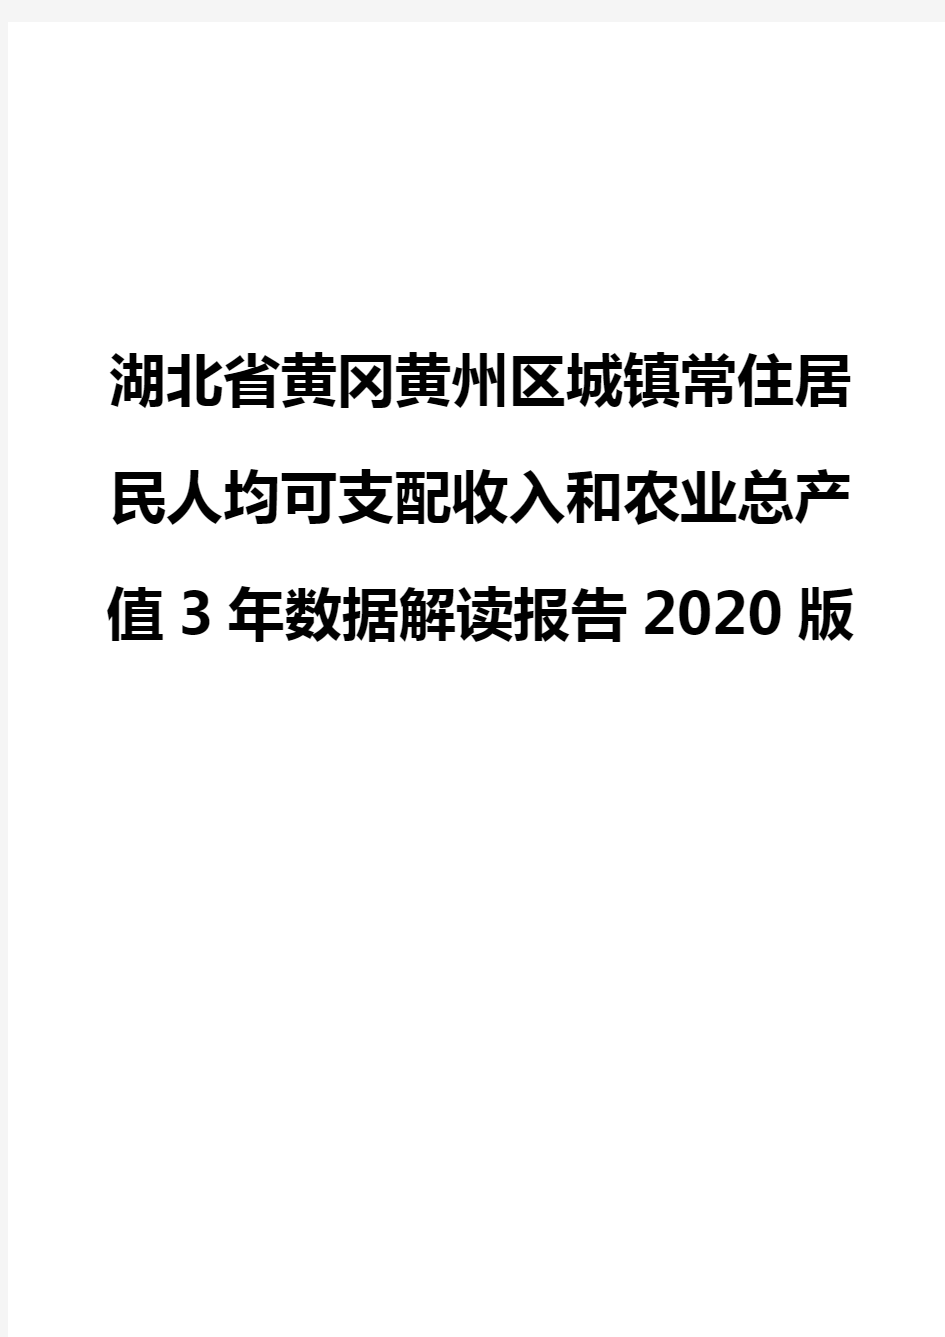 湖北省黄冈黄州区城镇常住居民人均可支配收入和农业总产值3年数据解读报告2020版